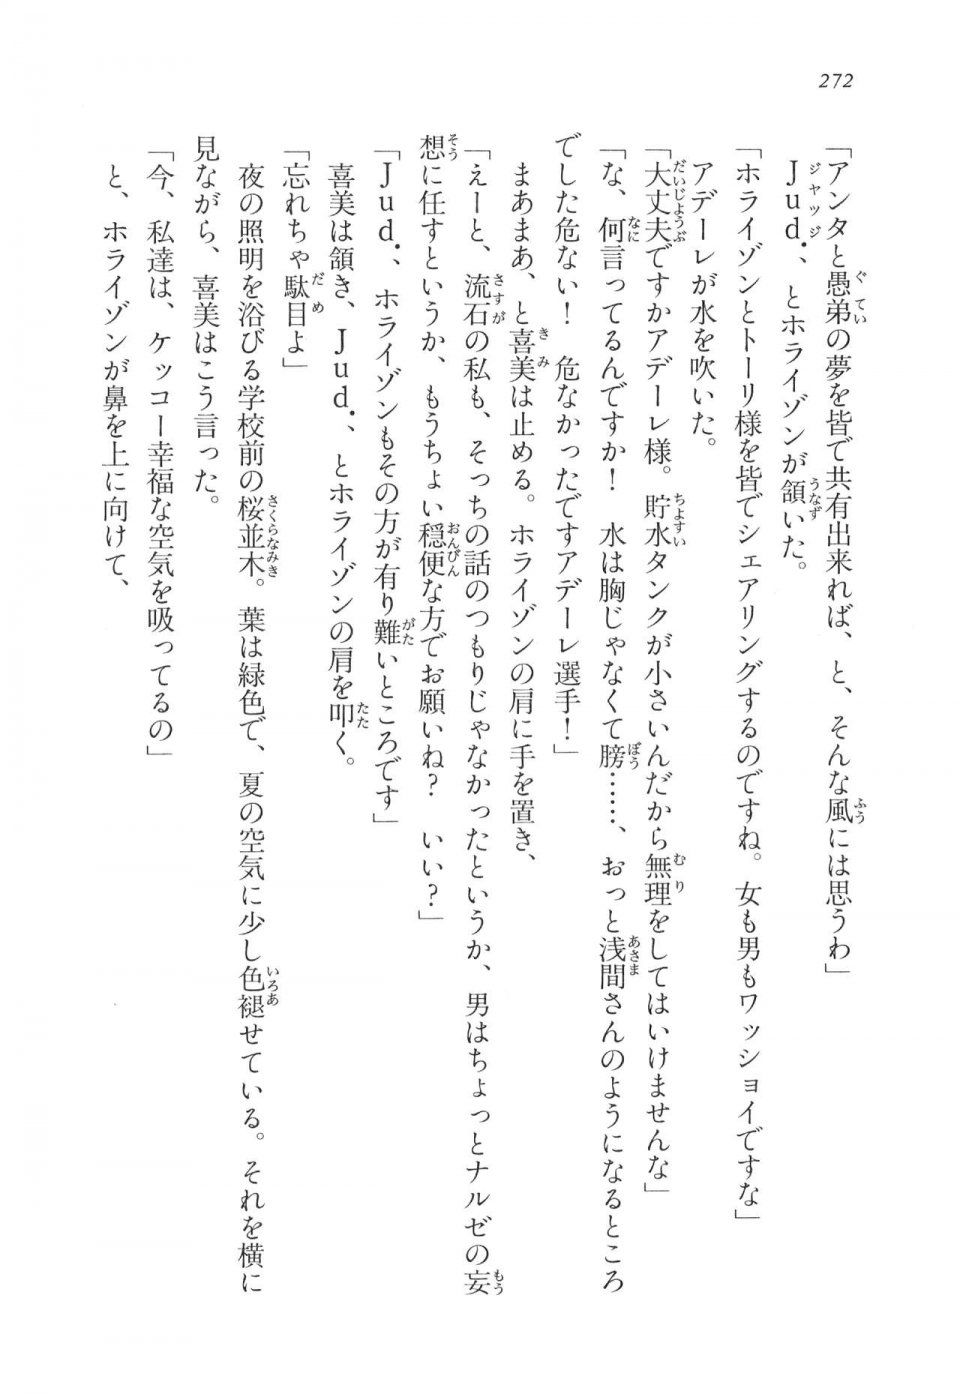 Kyoukai Senjou no Horizon LN Vol 11(5A) - Photo #272